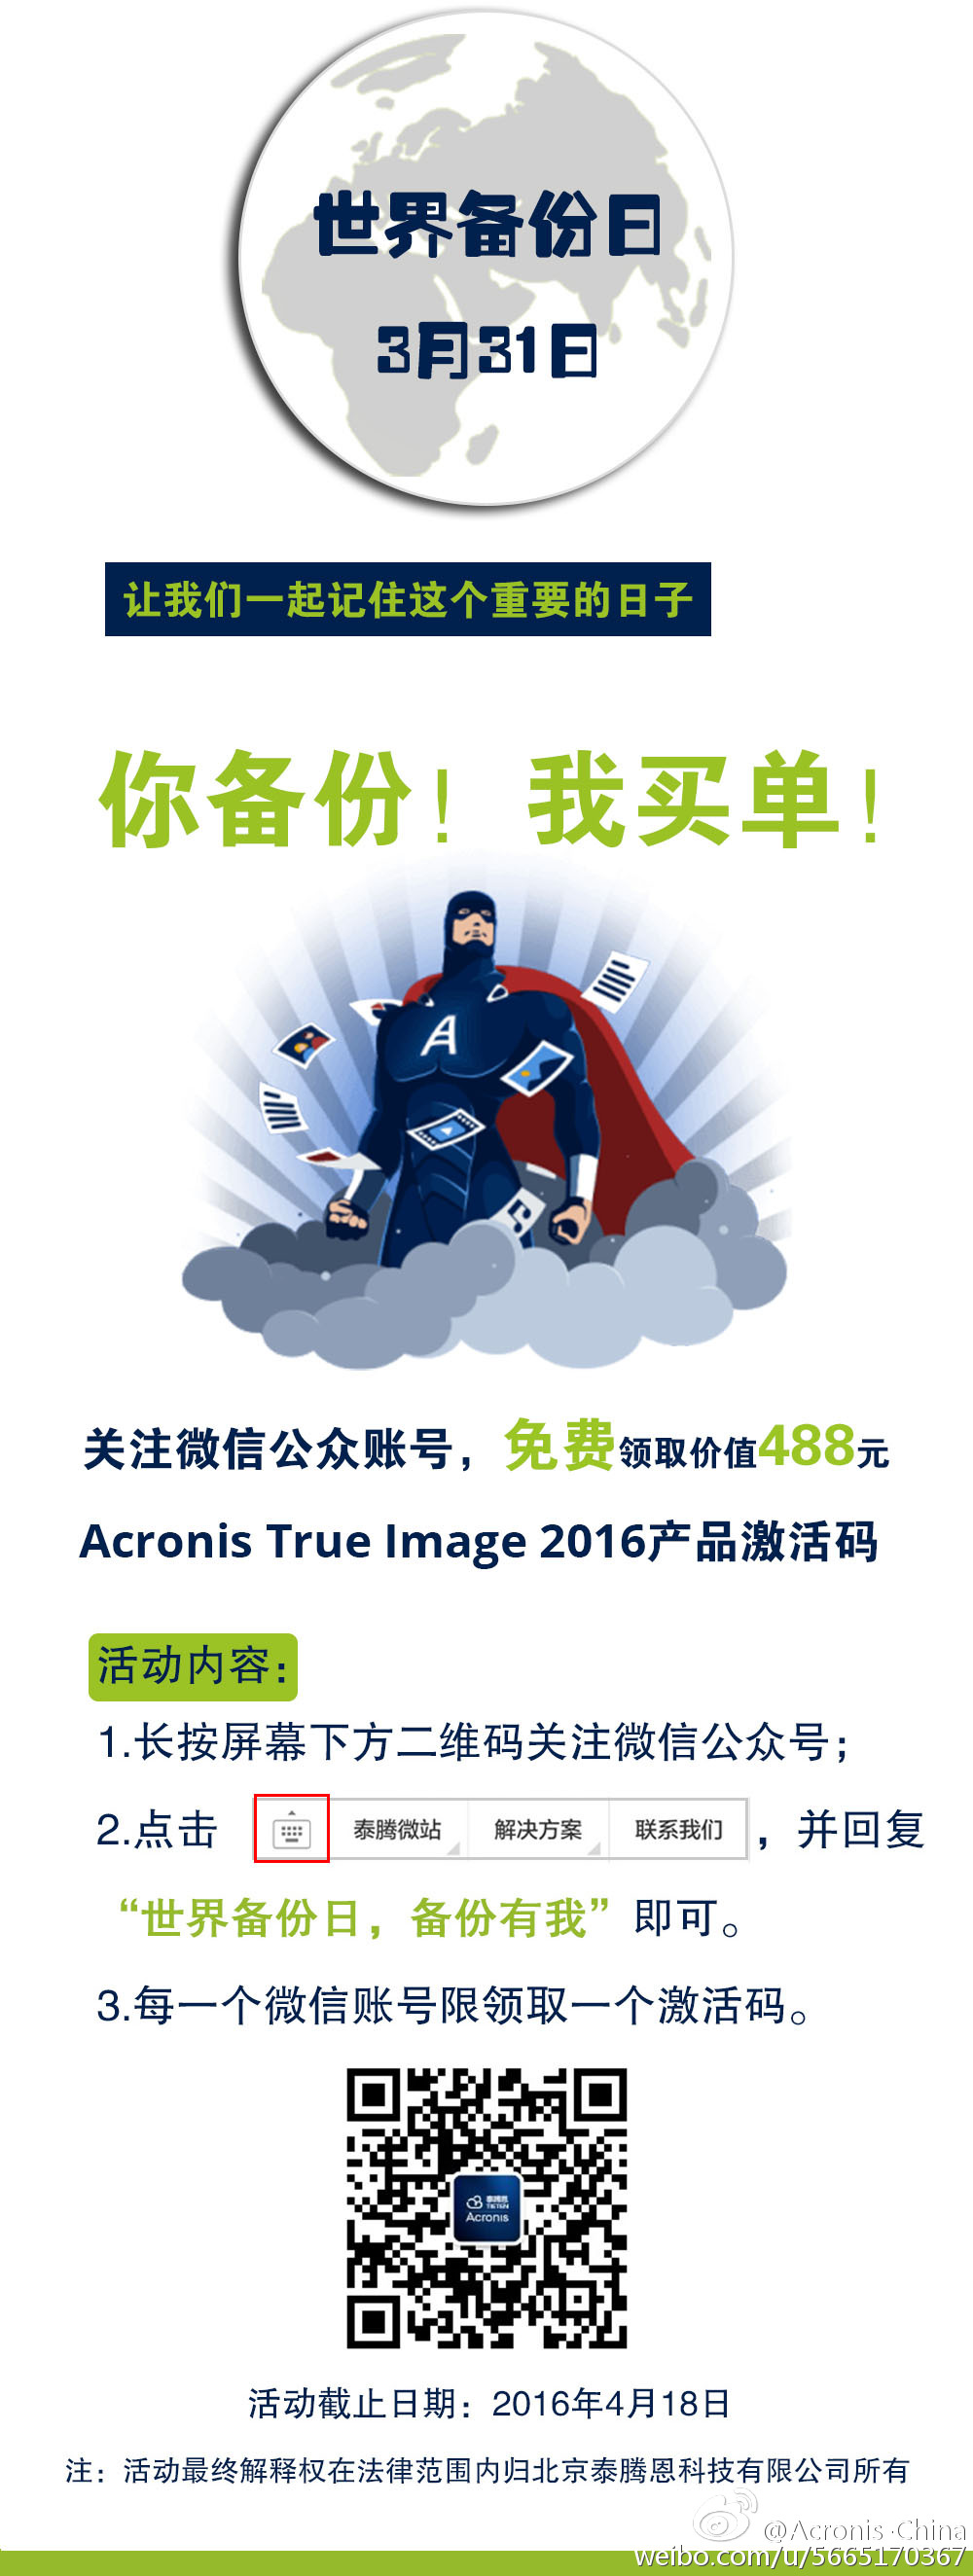 Acronis True Image - 据说能媲美 Ghost 的备份工具限免了 2